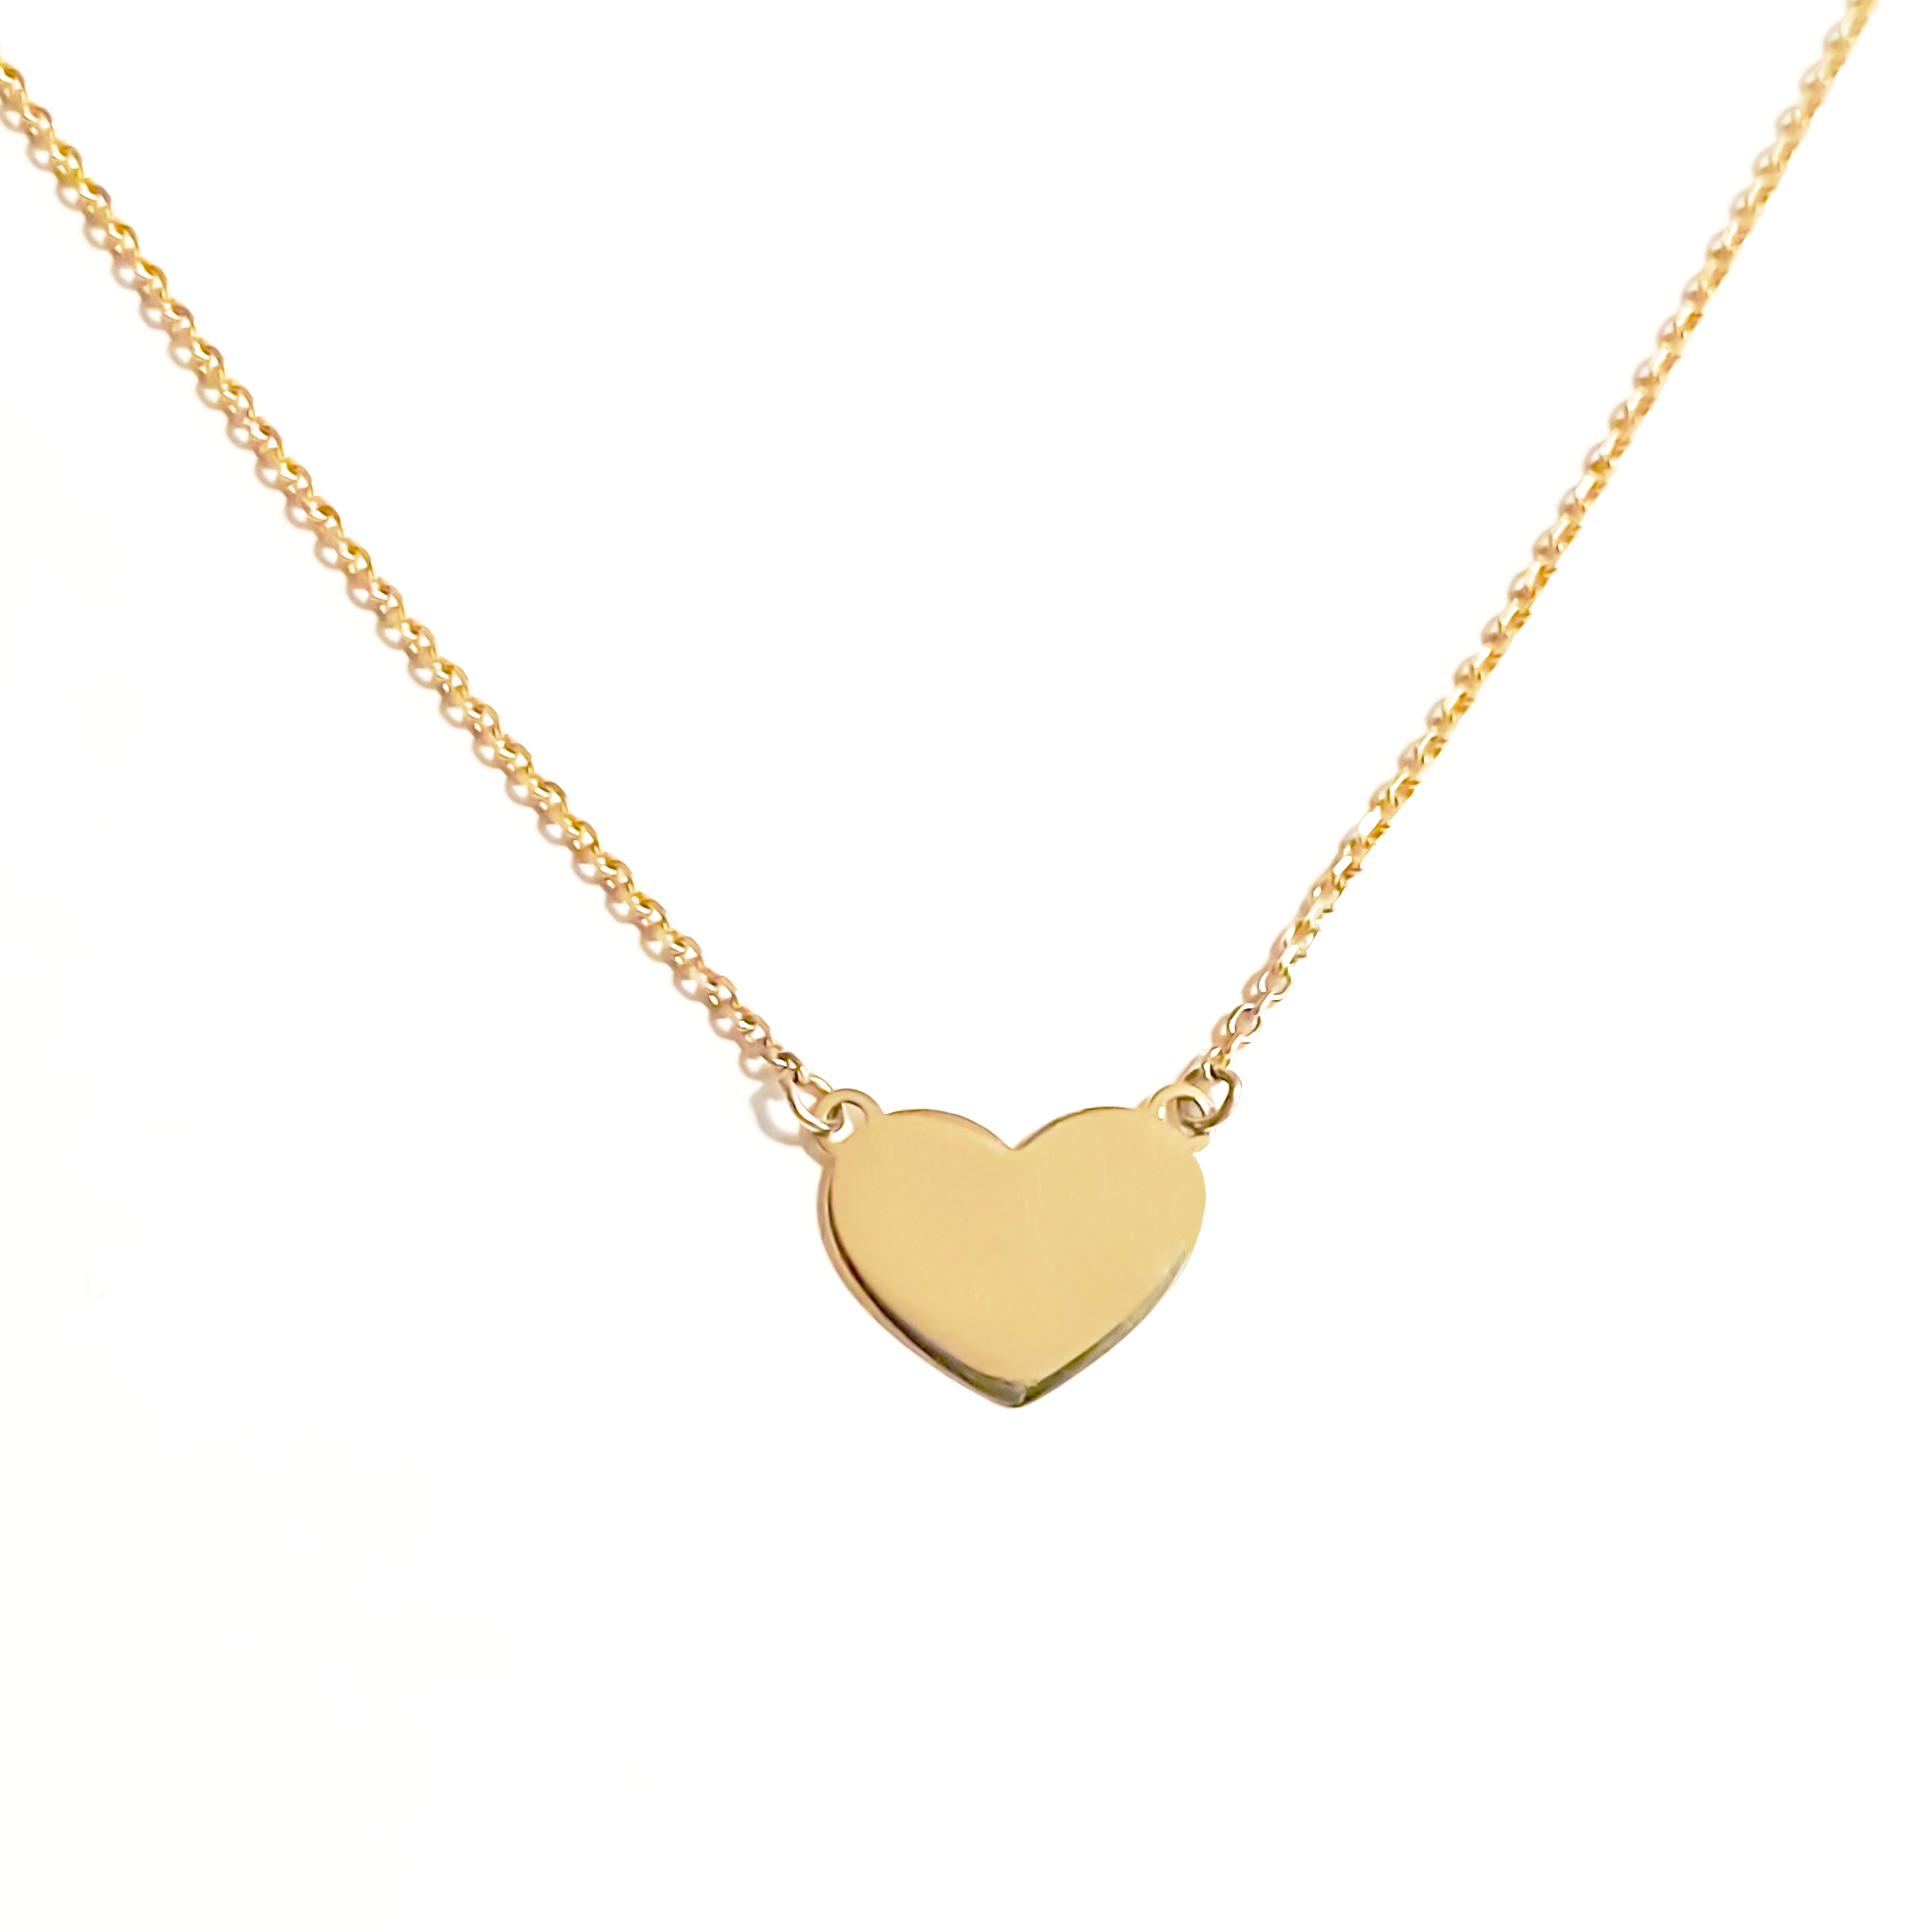 Pretty heart necklace